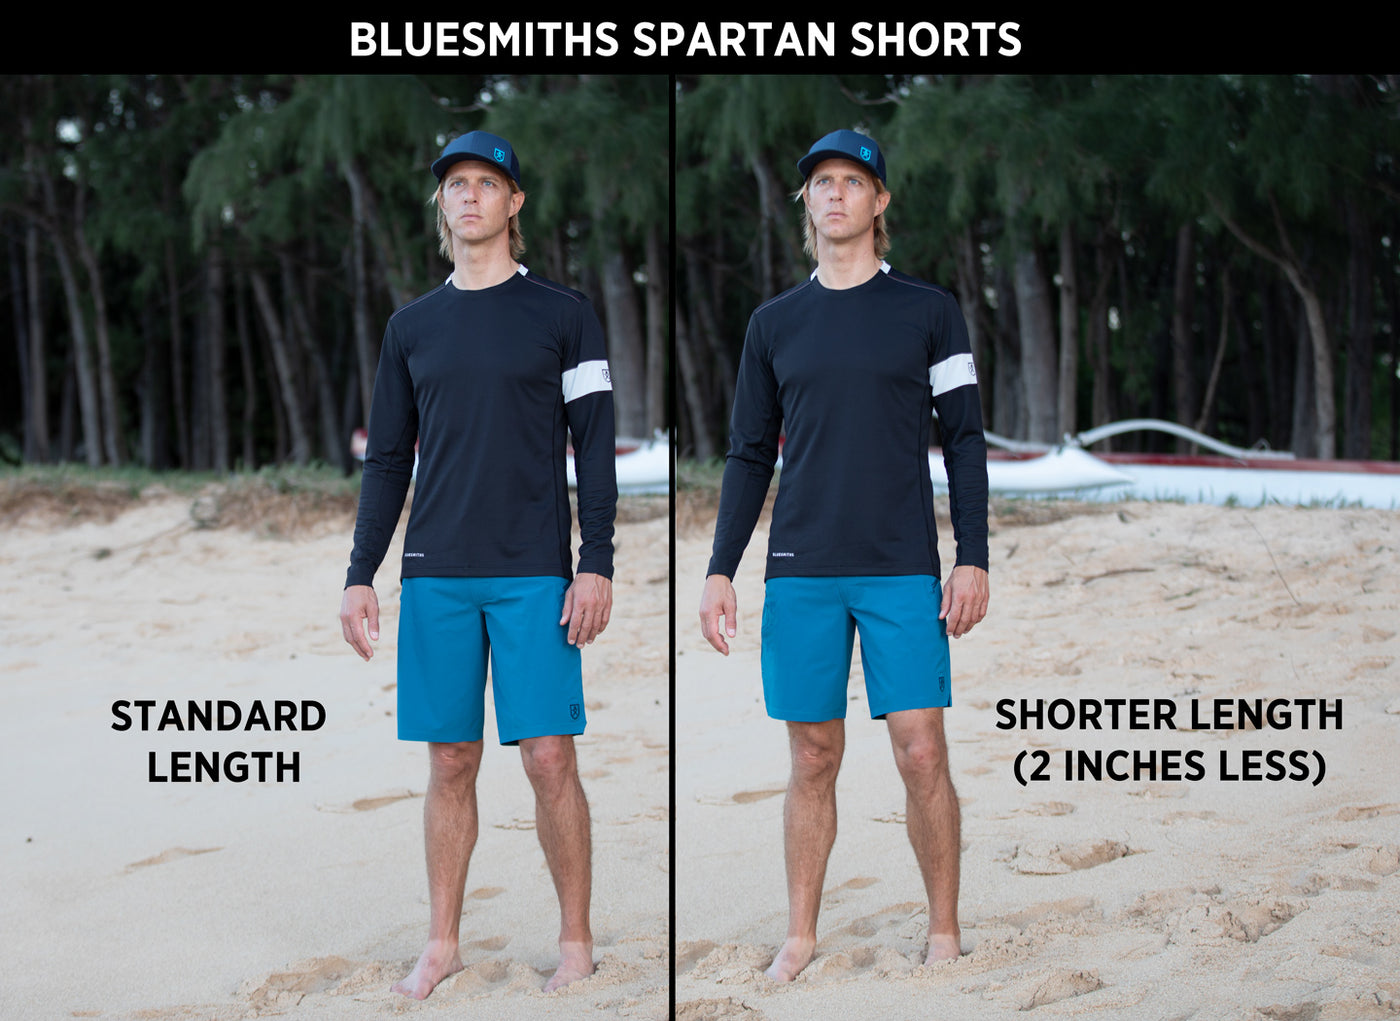 The Spartan Board Shorts - Shorter Length